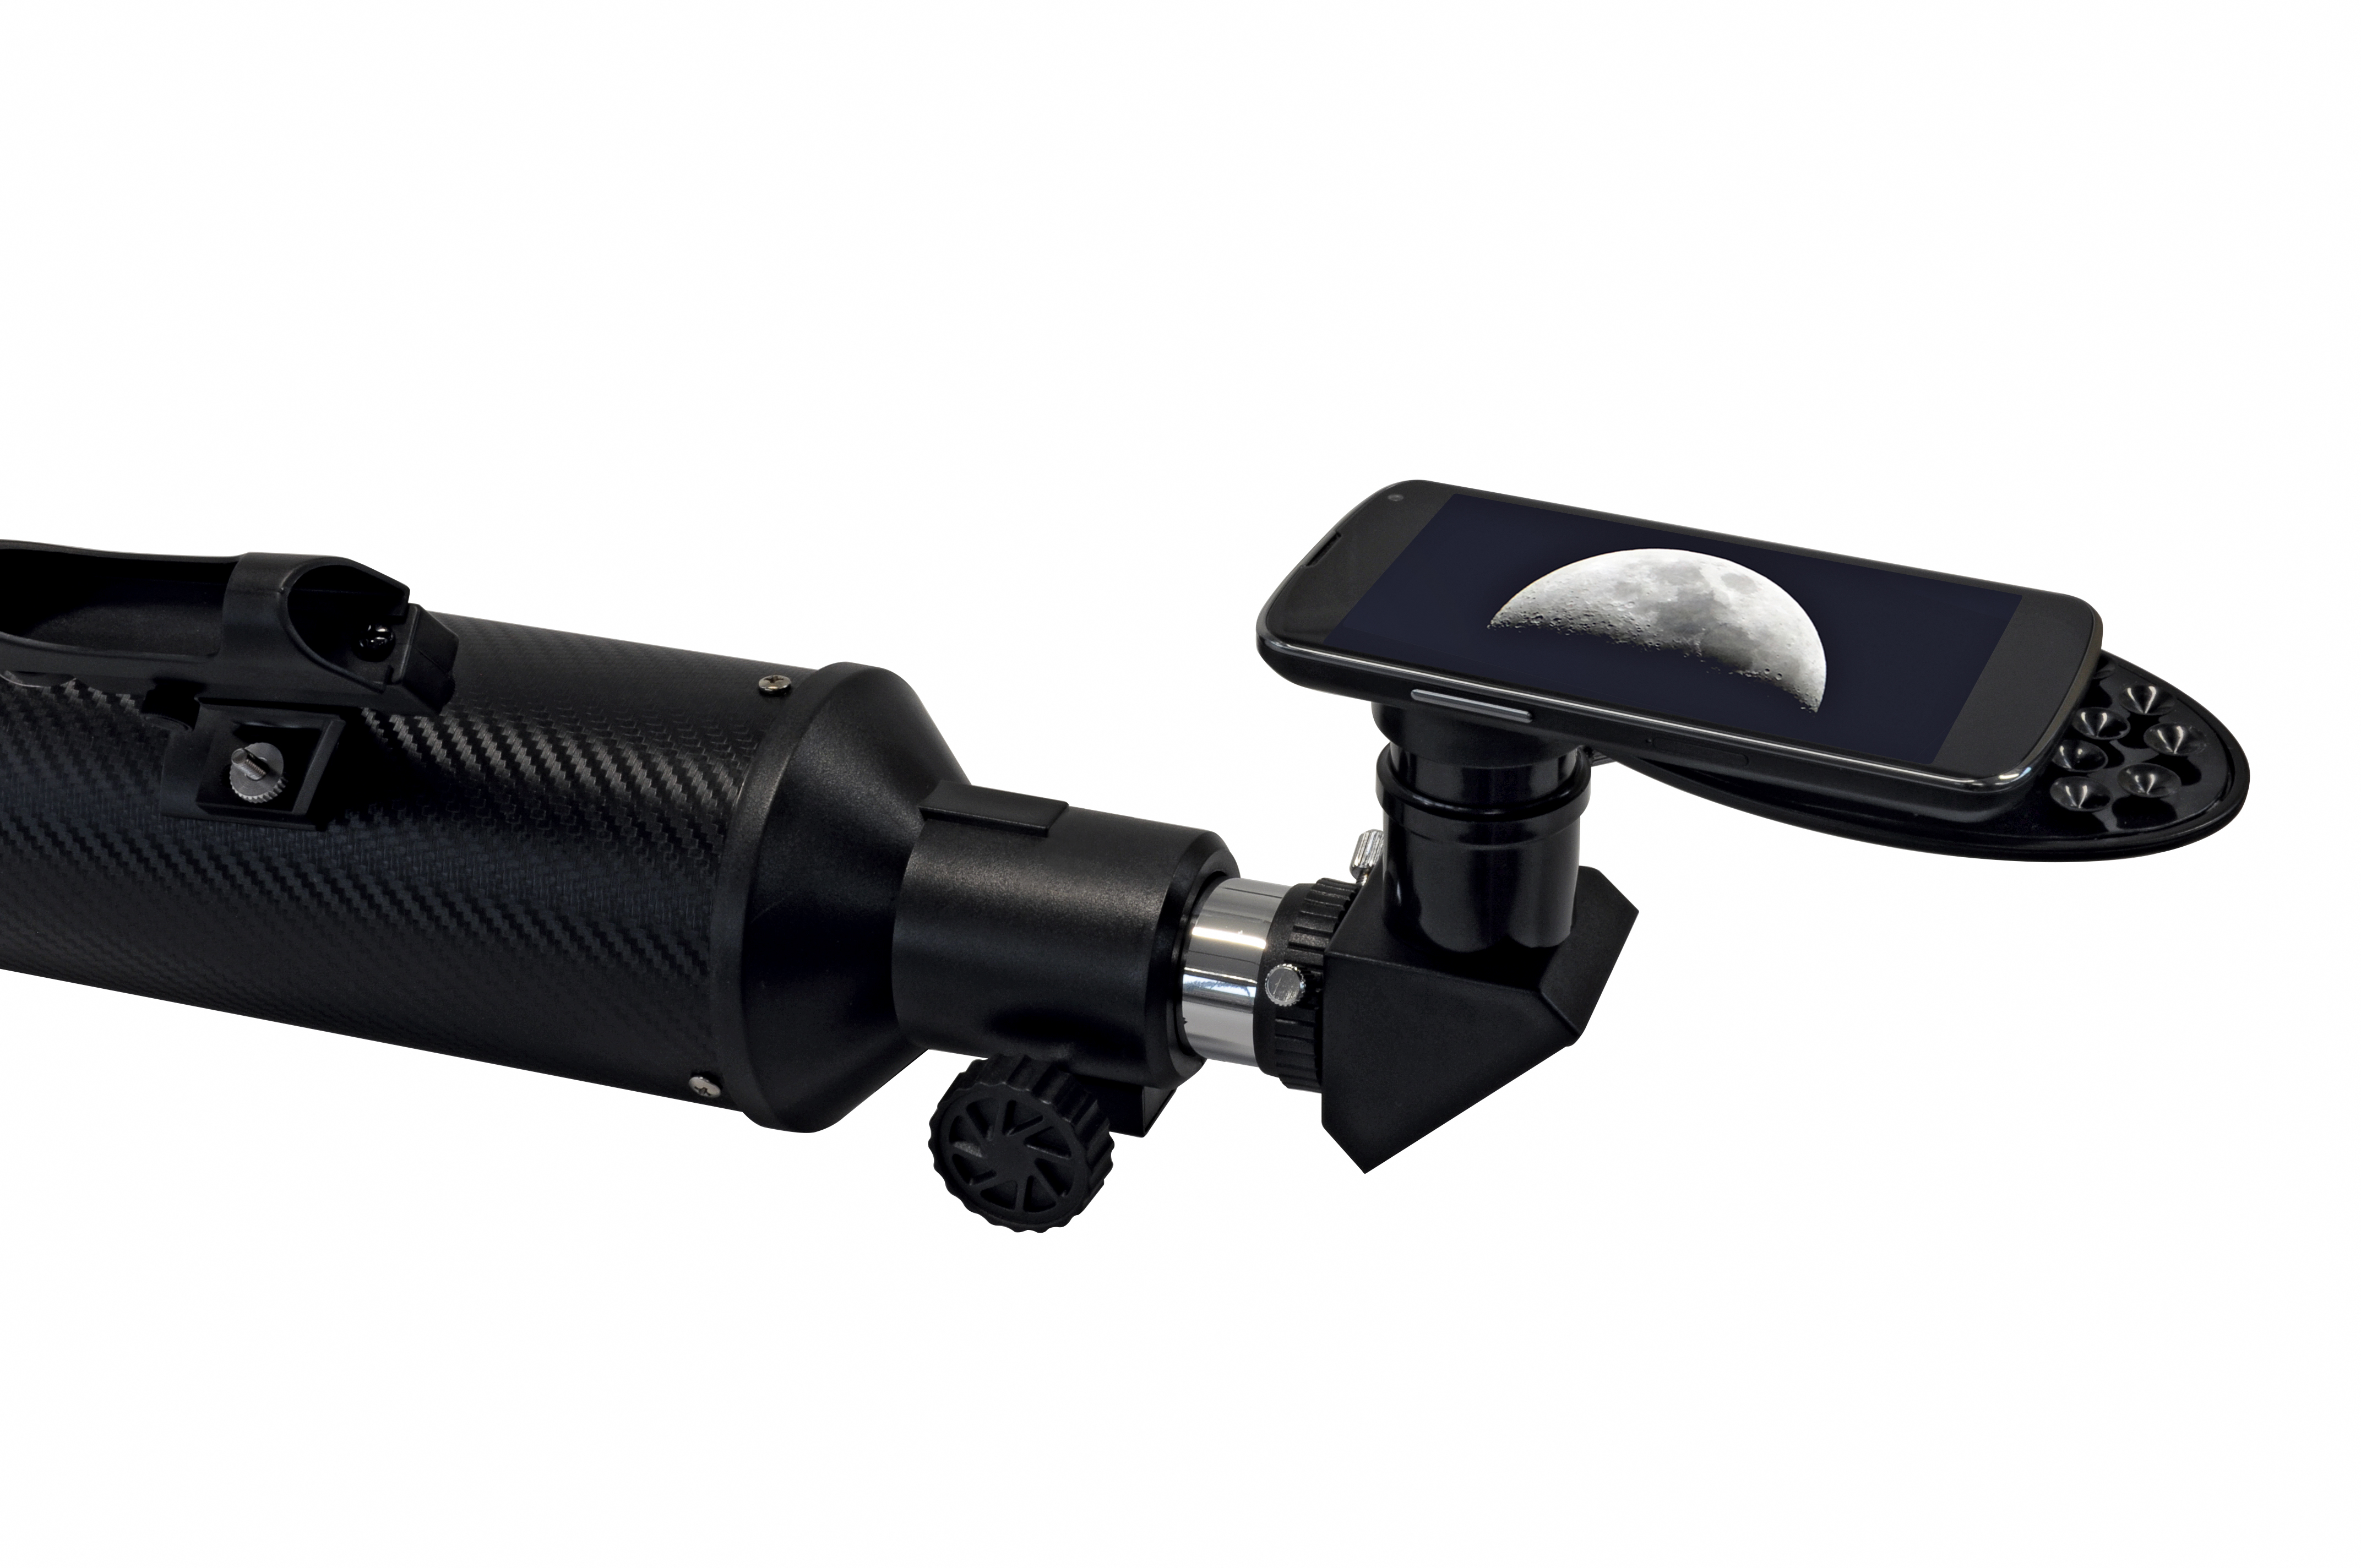 BRESSER Polaris-I 102/460 EQ3 Linsenteleskop mit Smartphone-Adapter & Sonnenfilter